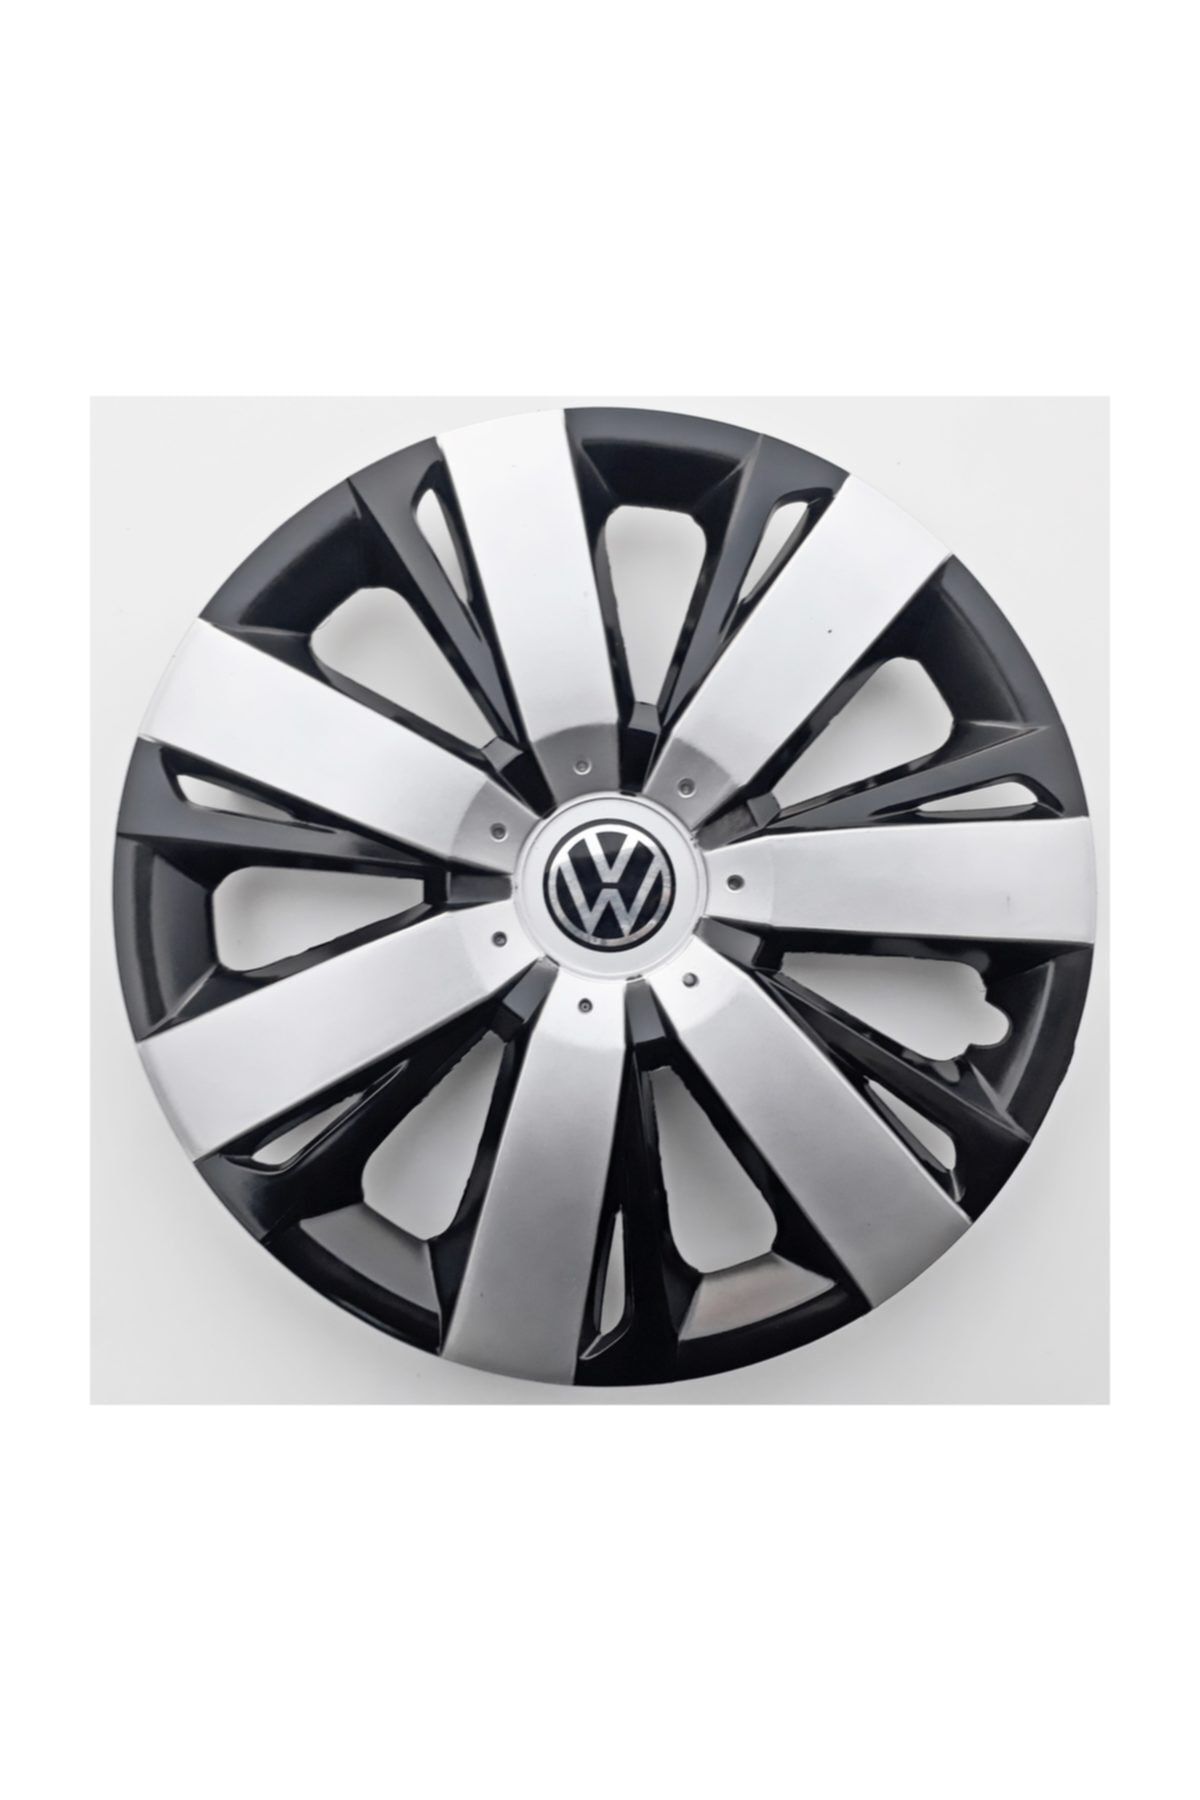 Genel Markalar 14'' Inç Volkswagen Jant Kapağı 4 Adet Çelik Jant Görünümlü Renkli - Kırılmaz Esnek